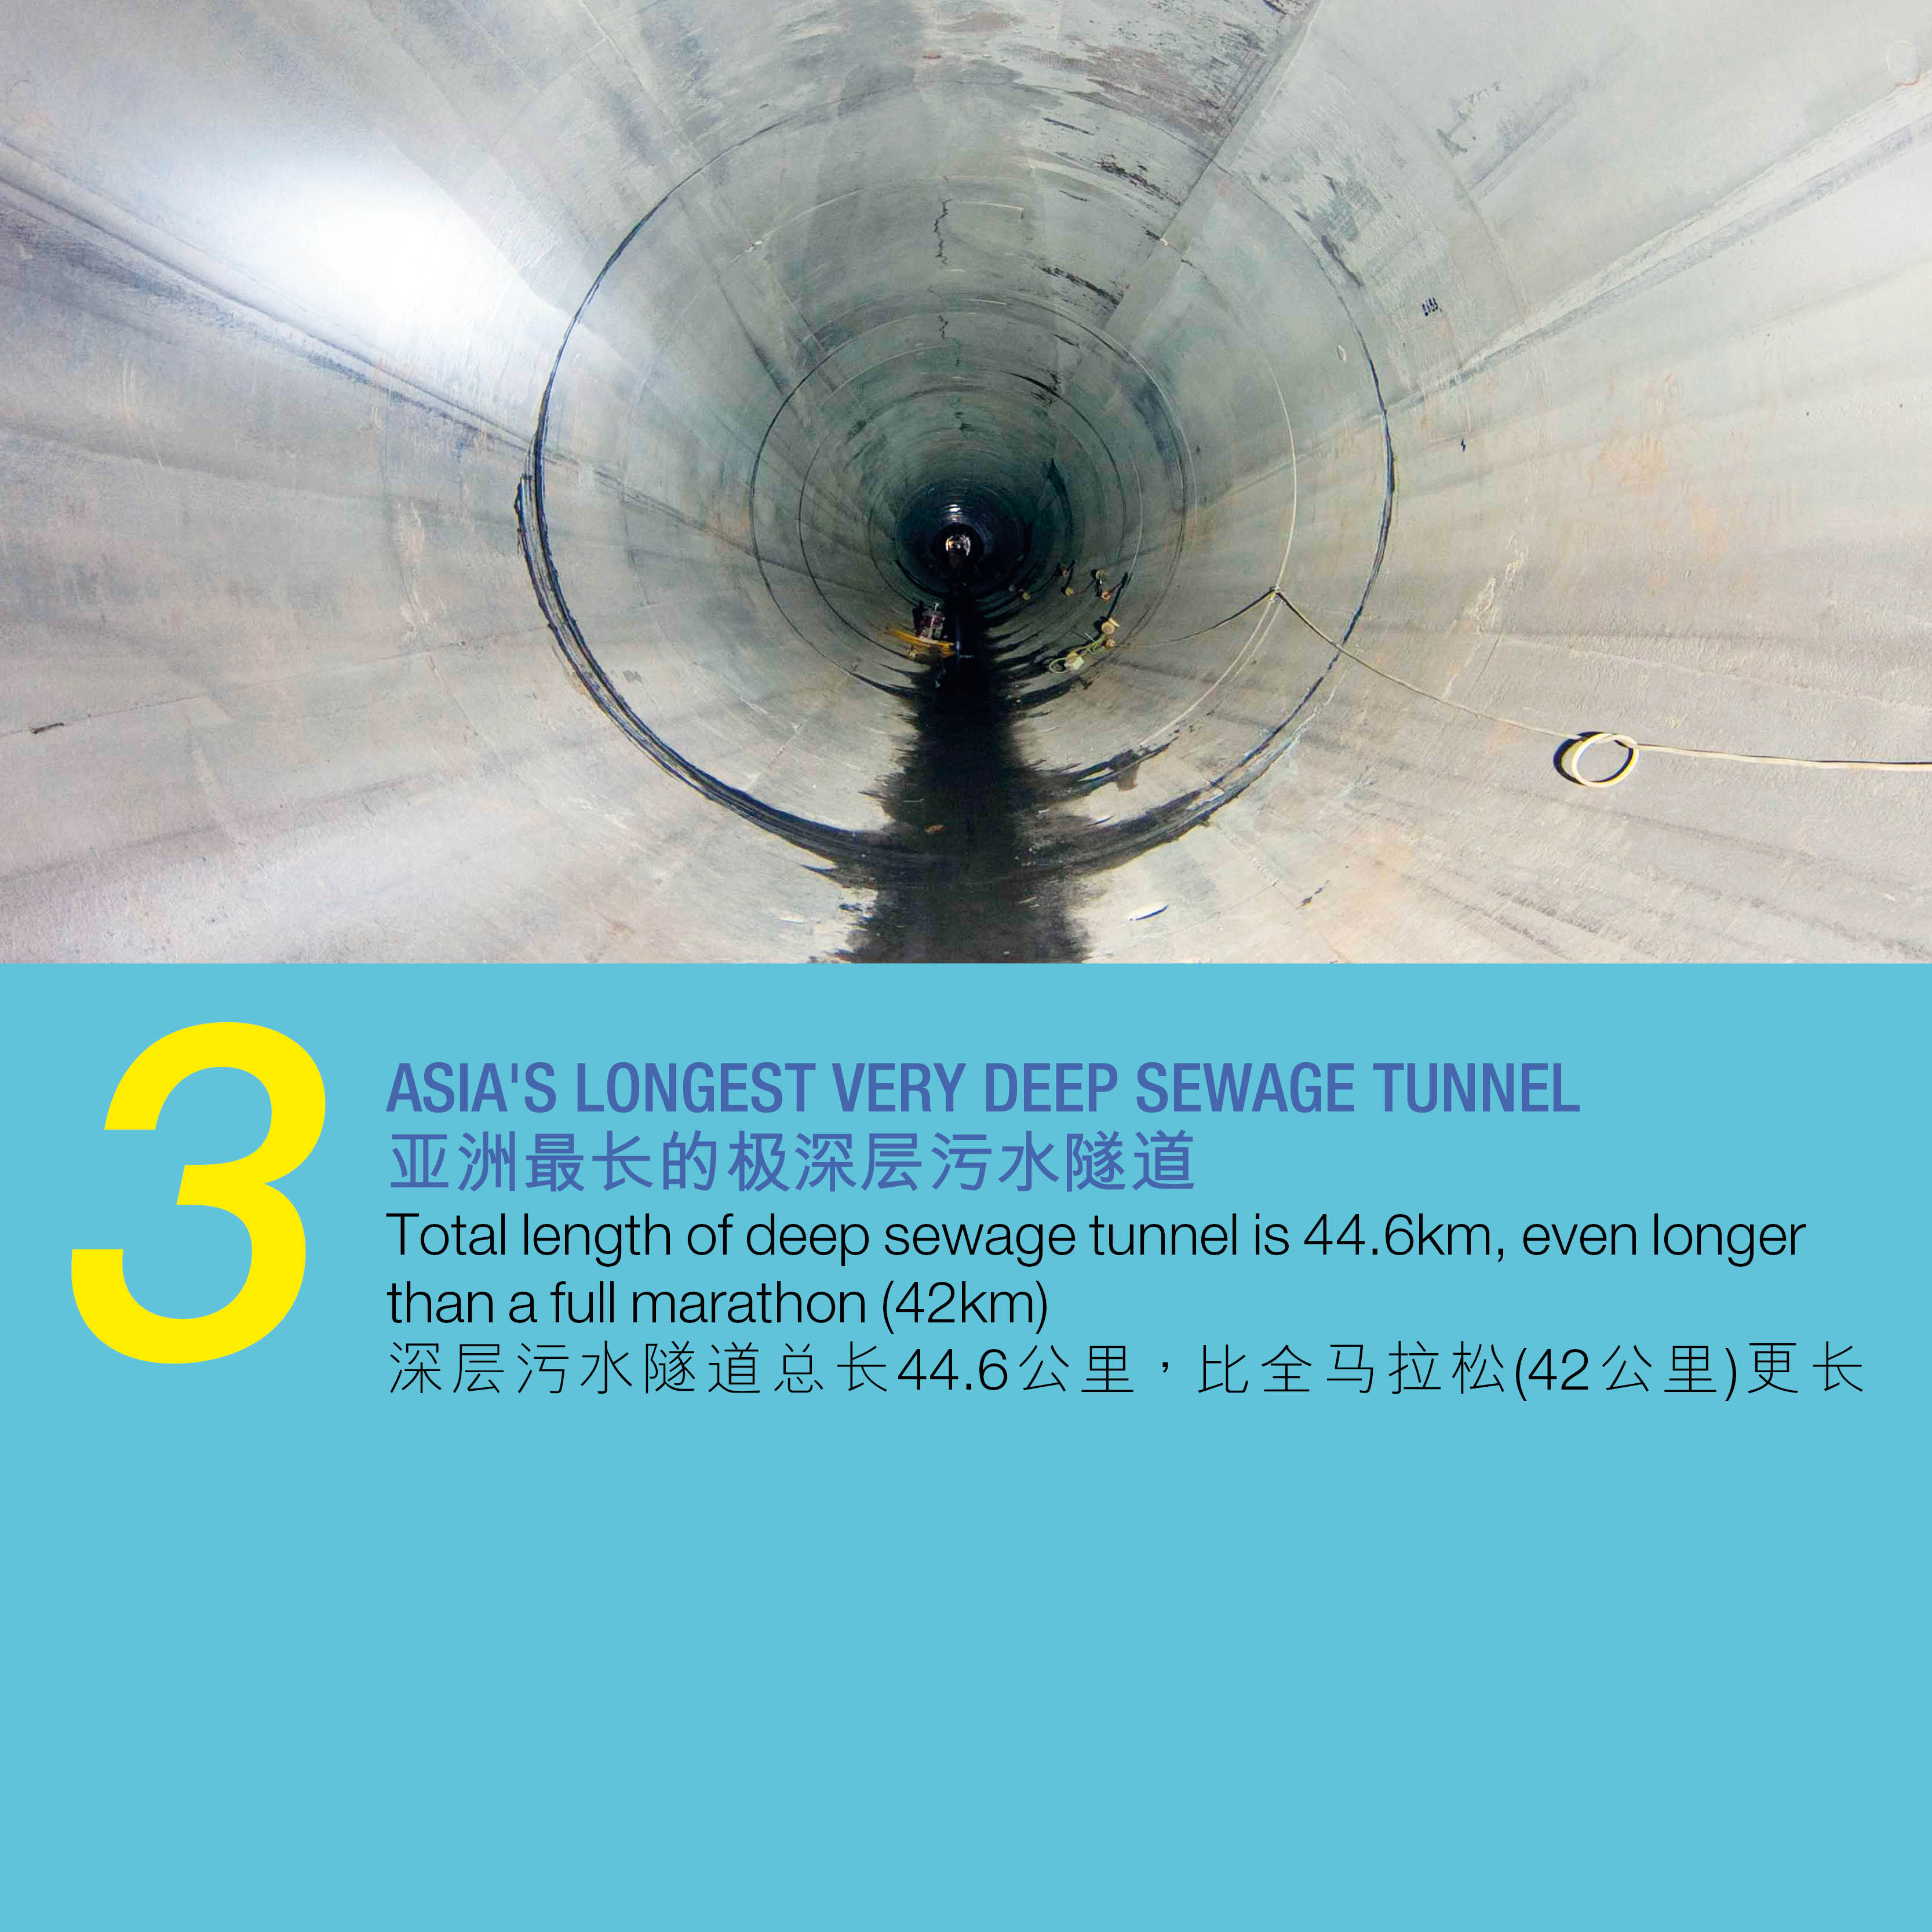 3. 亚洲最长的极深层污水隧道 深层污水隧道总长44.6公里，比全马拉松(42公里)更长